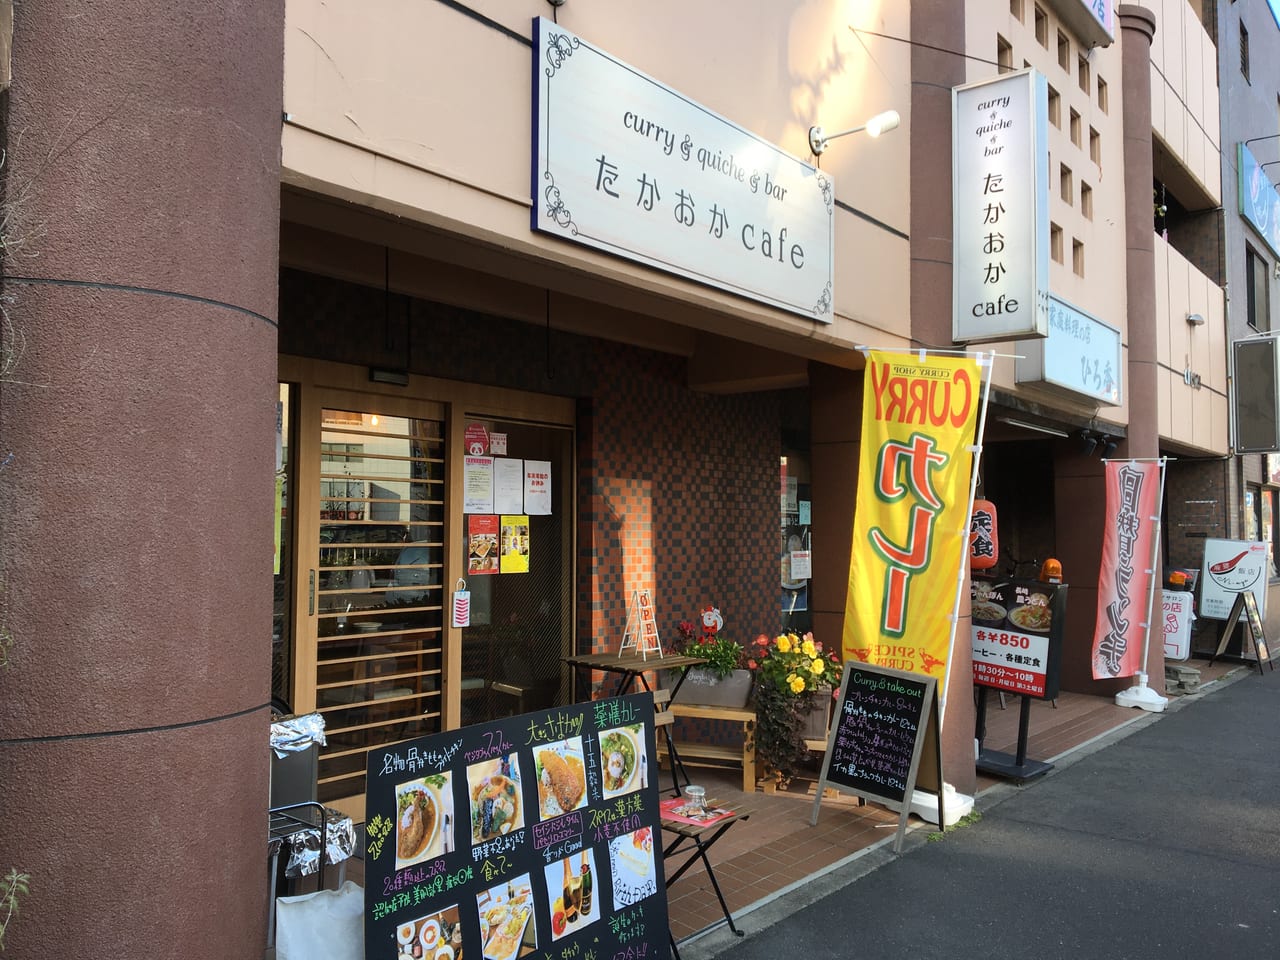 名古屋市東区 こんなところにスパイシーなカレーがいただけるすてきなカフェが Curry Quiche Bar たかおかcafe が10月にオープンしていました 号外net 名古屋市北区 東区